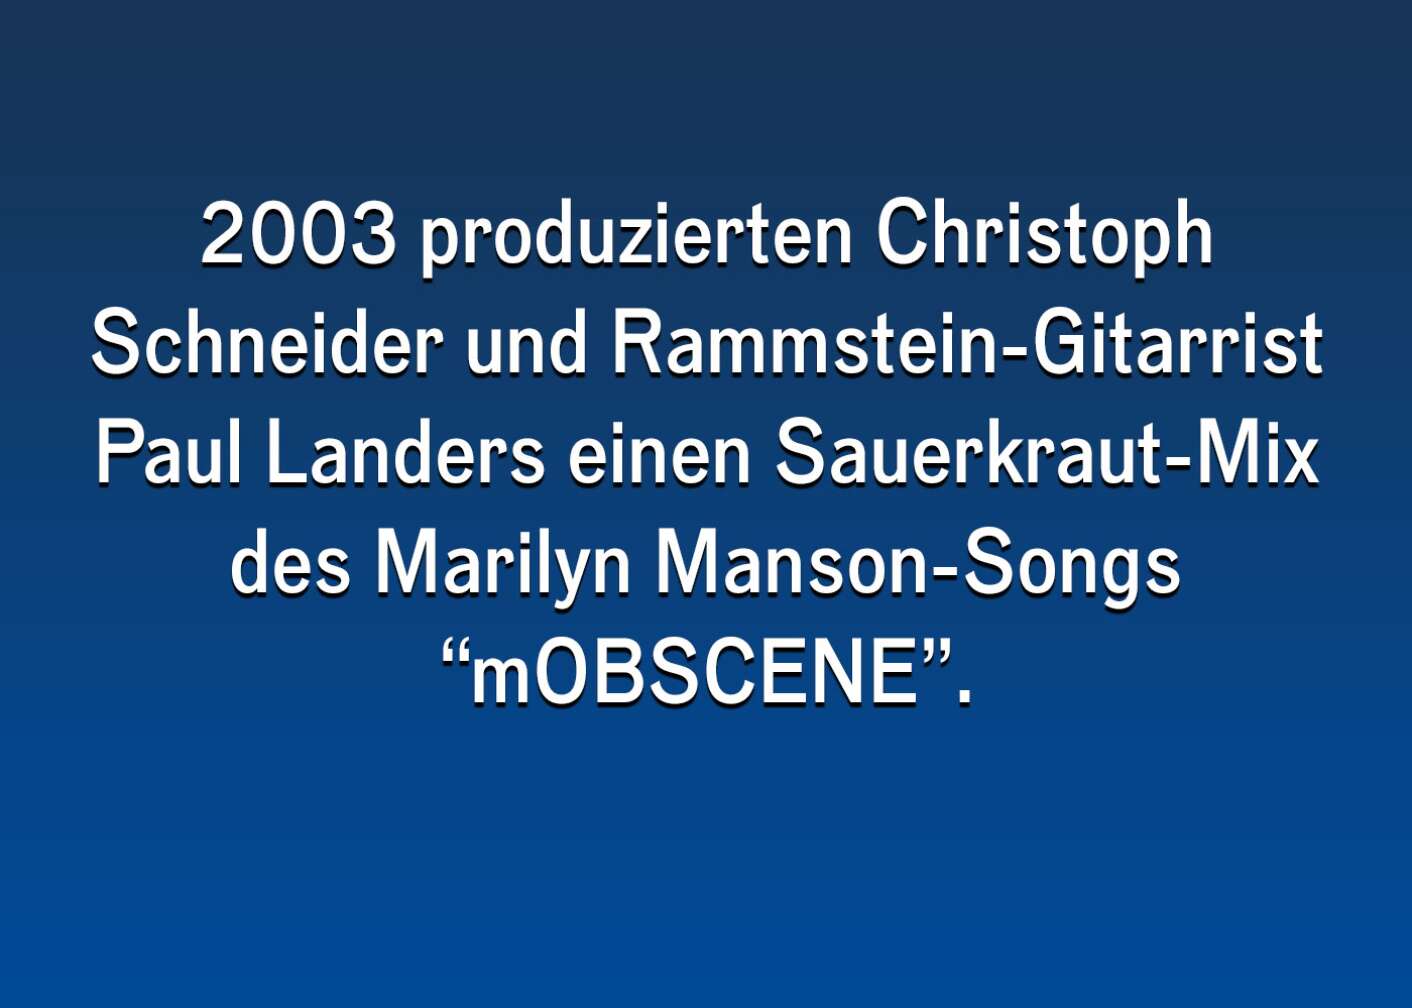 Fakten über Christoph Schneider